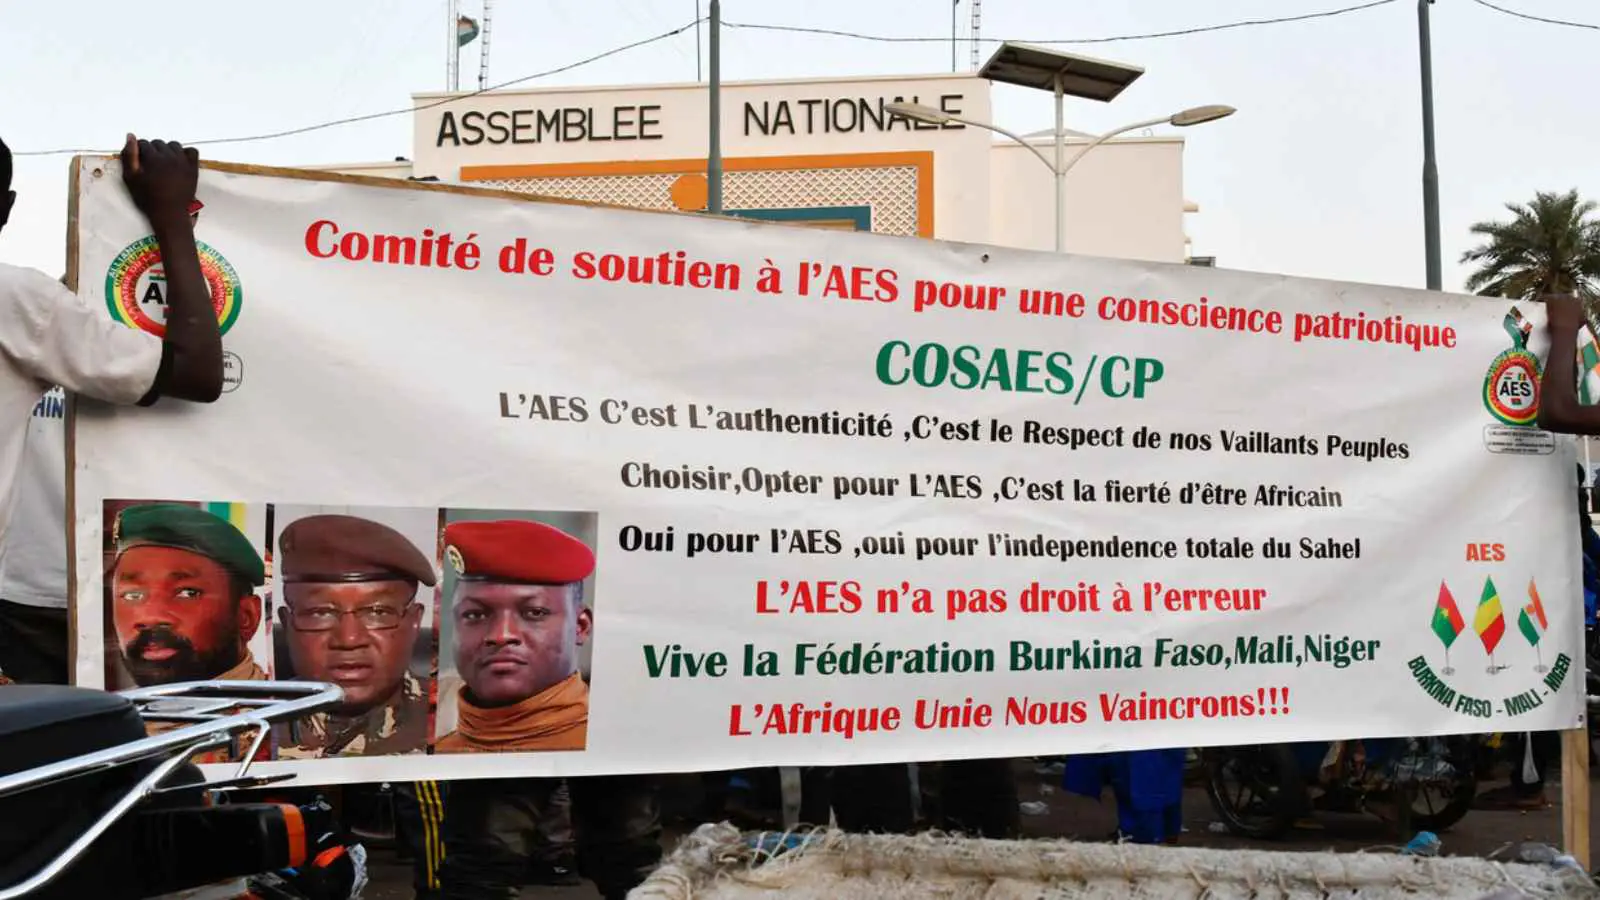 رئيس النيجر: شعوب دول الساحل الثلاث "أدارت ظهرها" لإيكواس